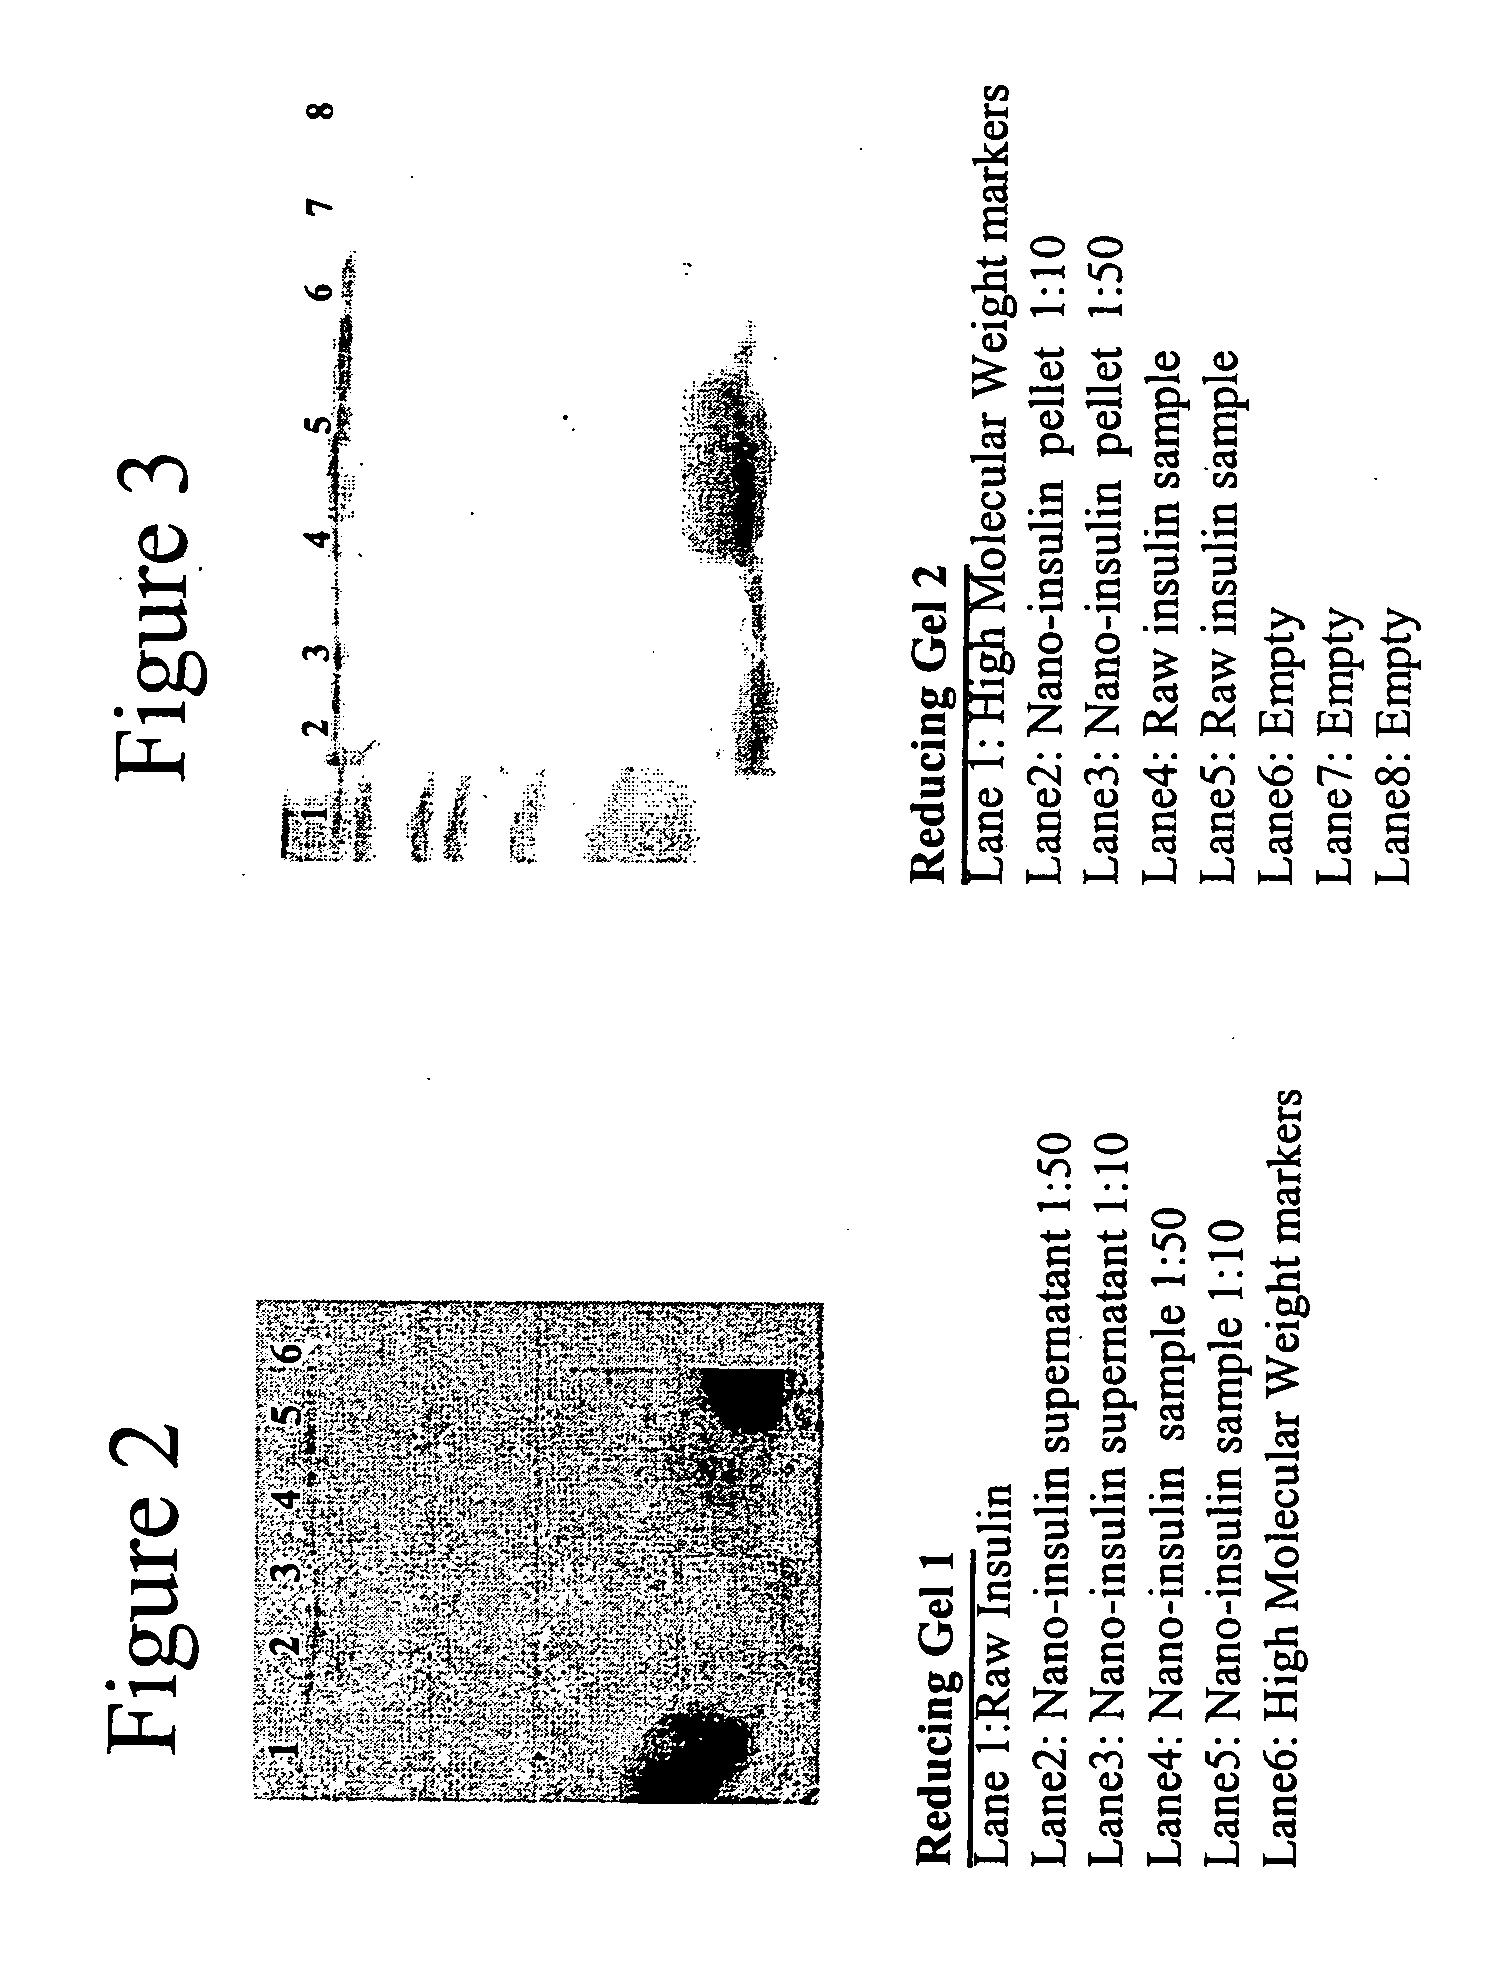 Nanoparticulate insulin